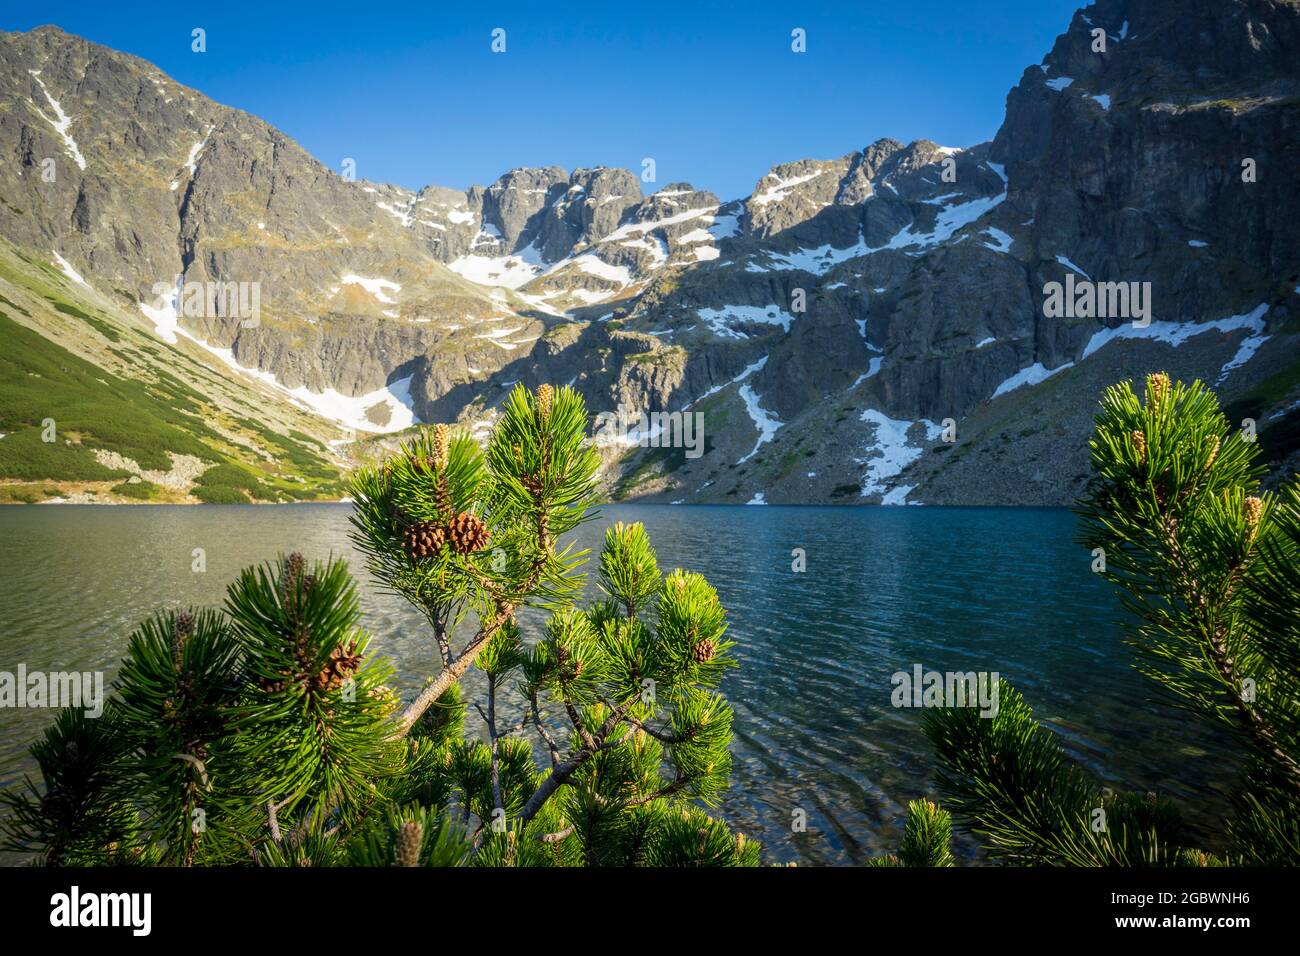 Gasienicowy Black Pond beau lac propre dans les Tatras polonaises. Banque D'Images